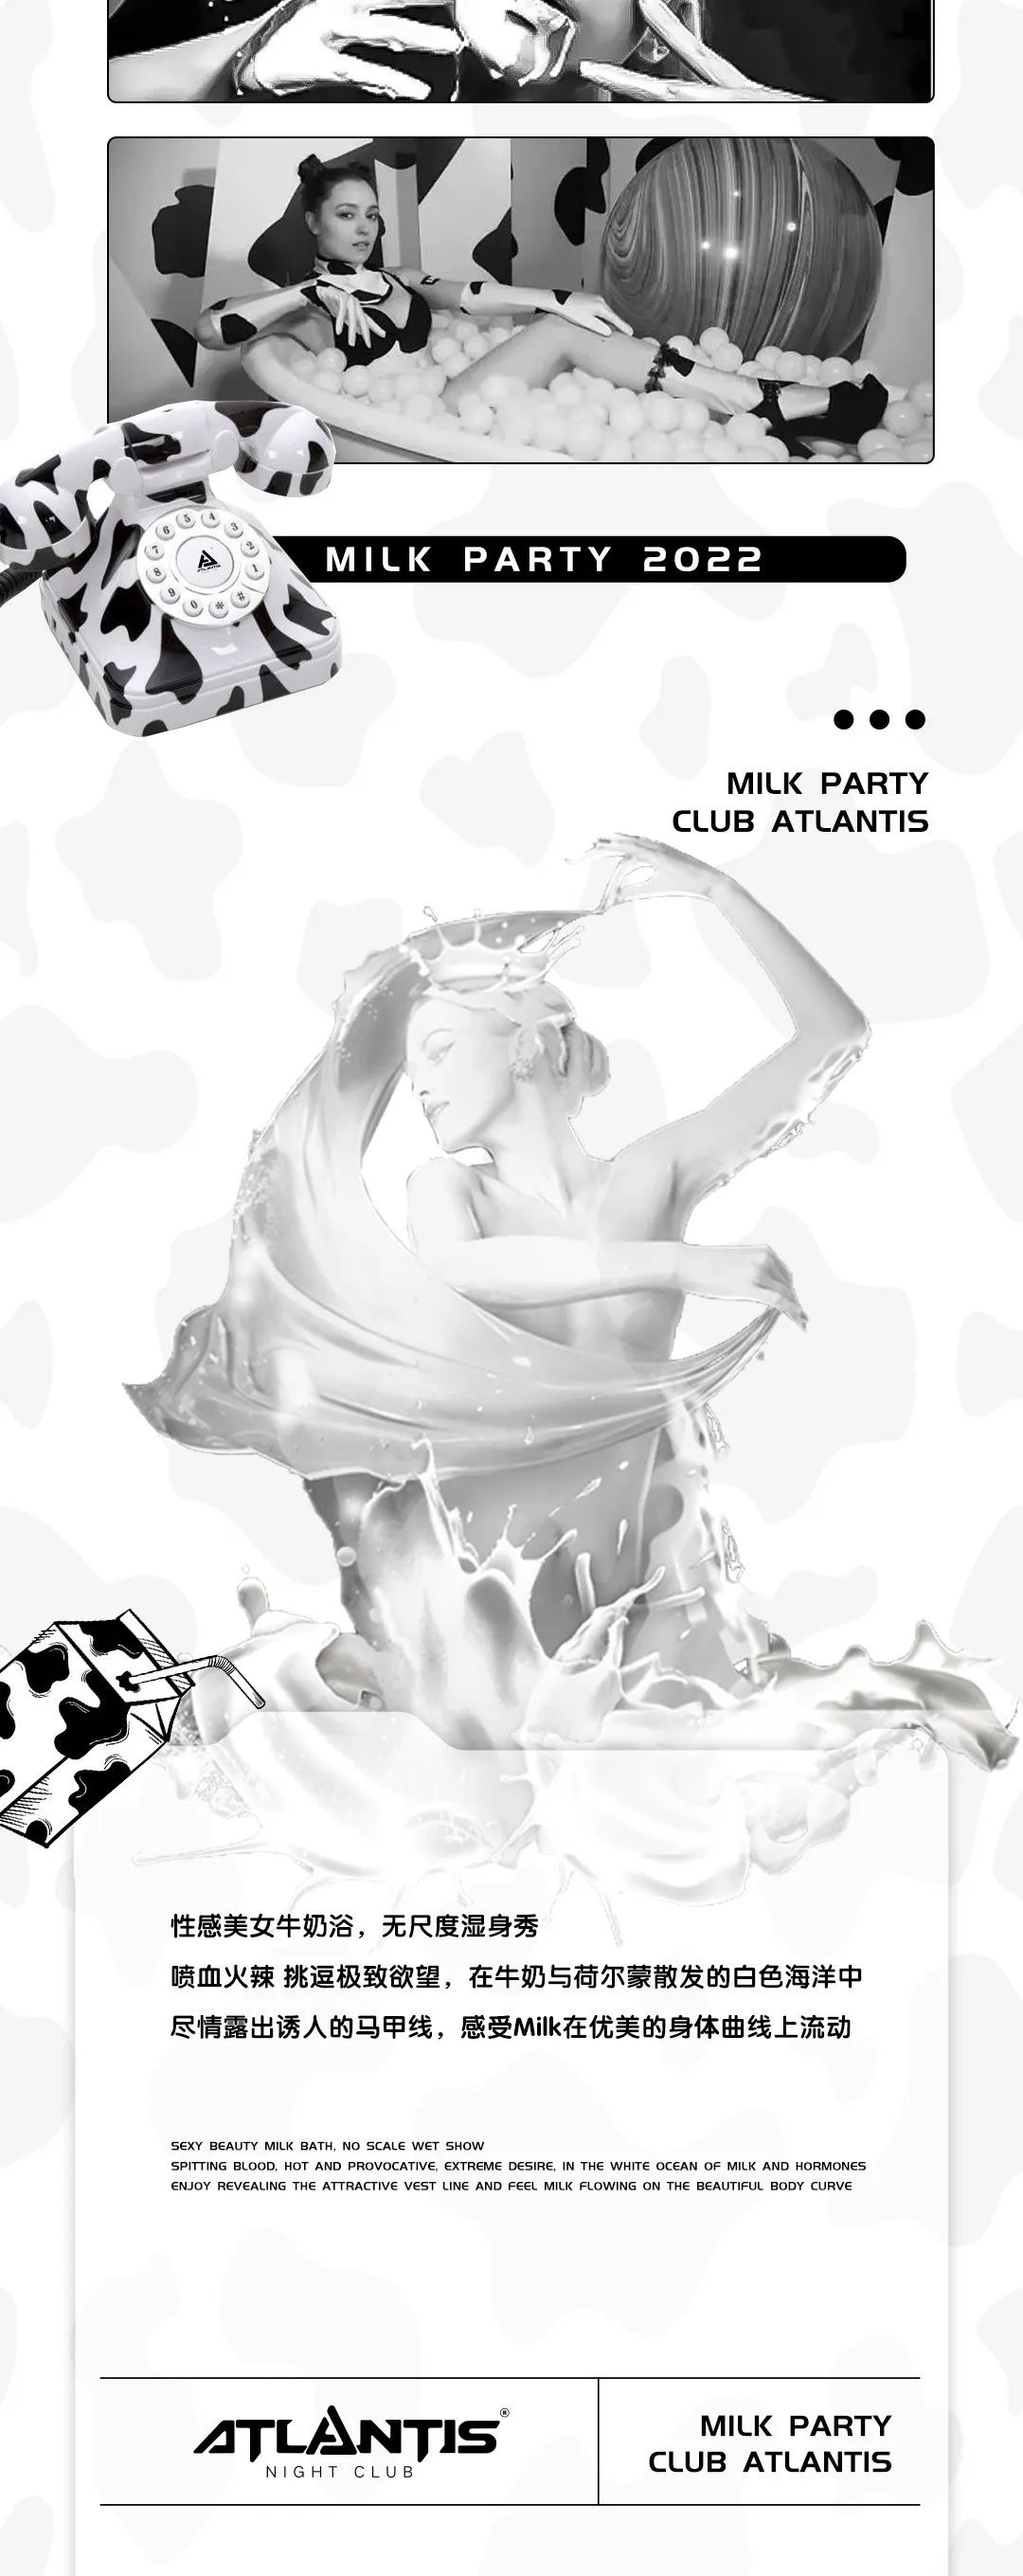 闲来无事，不如来洗个牛奶浴-马鞍山亚特兰帝斯酒吧/Atlantis Club